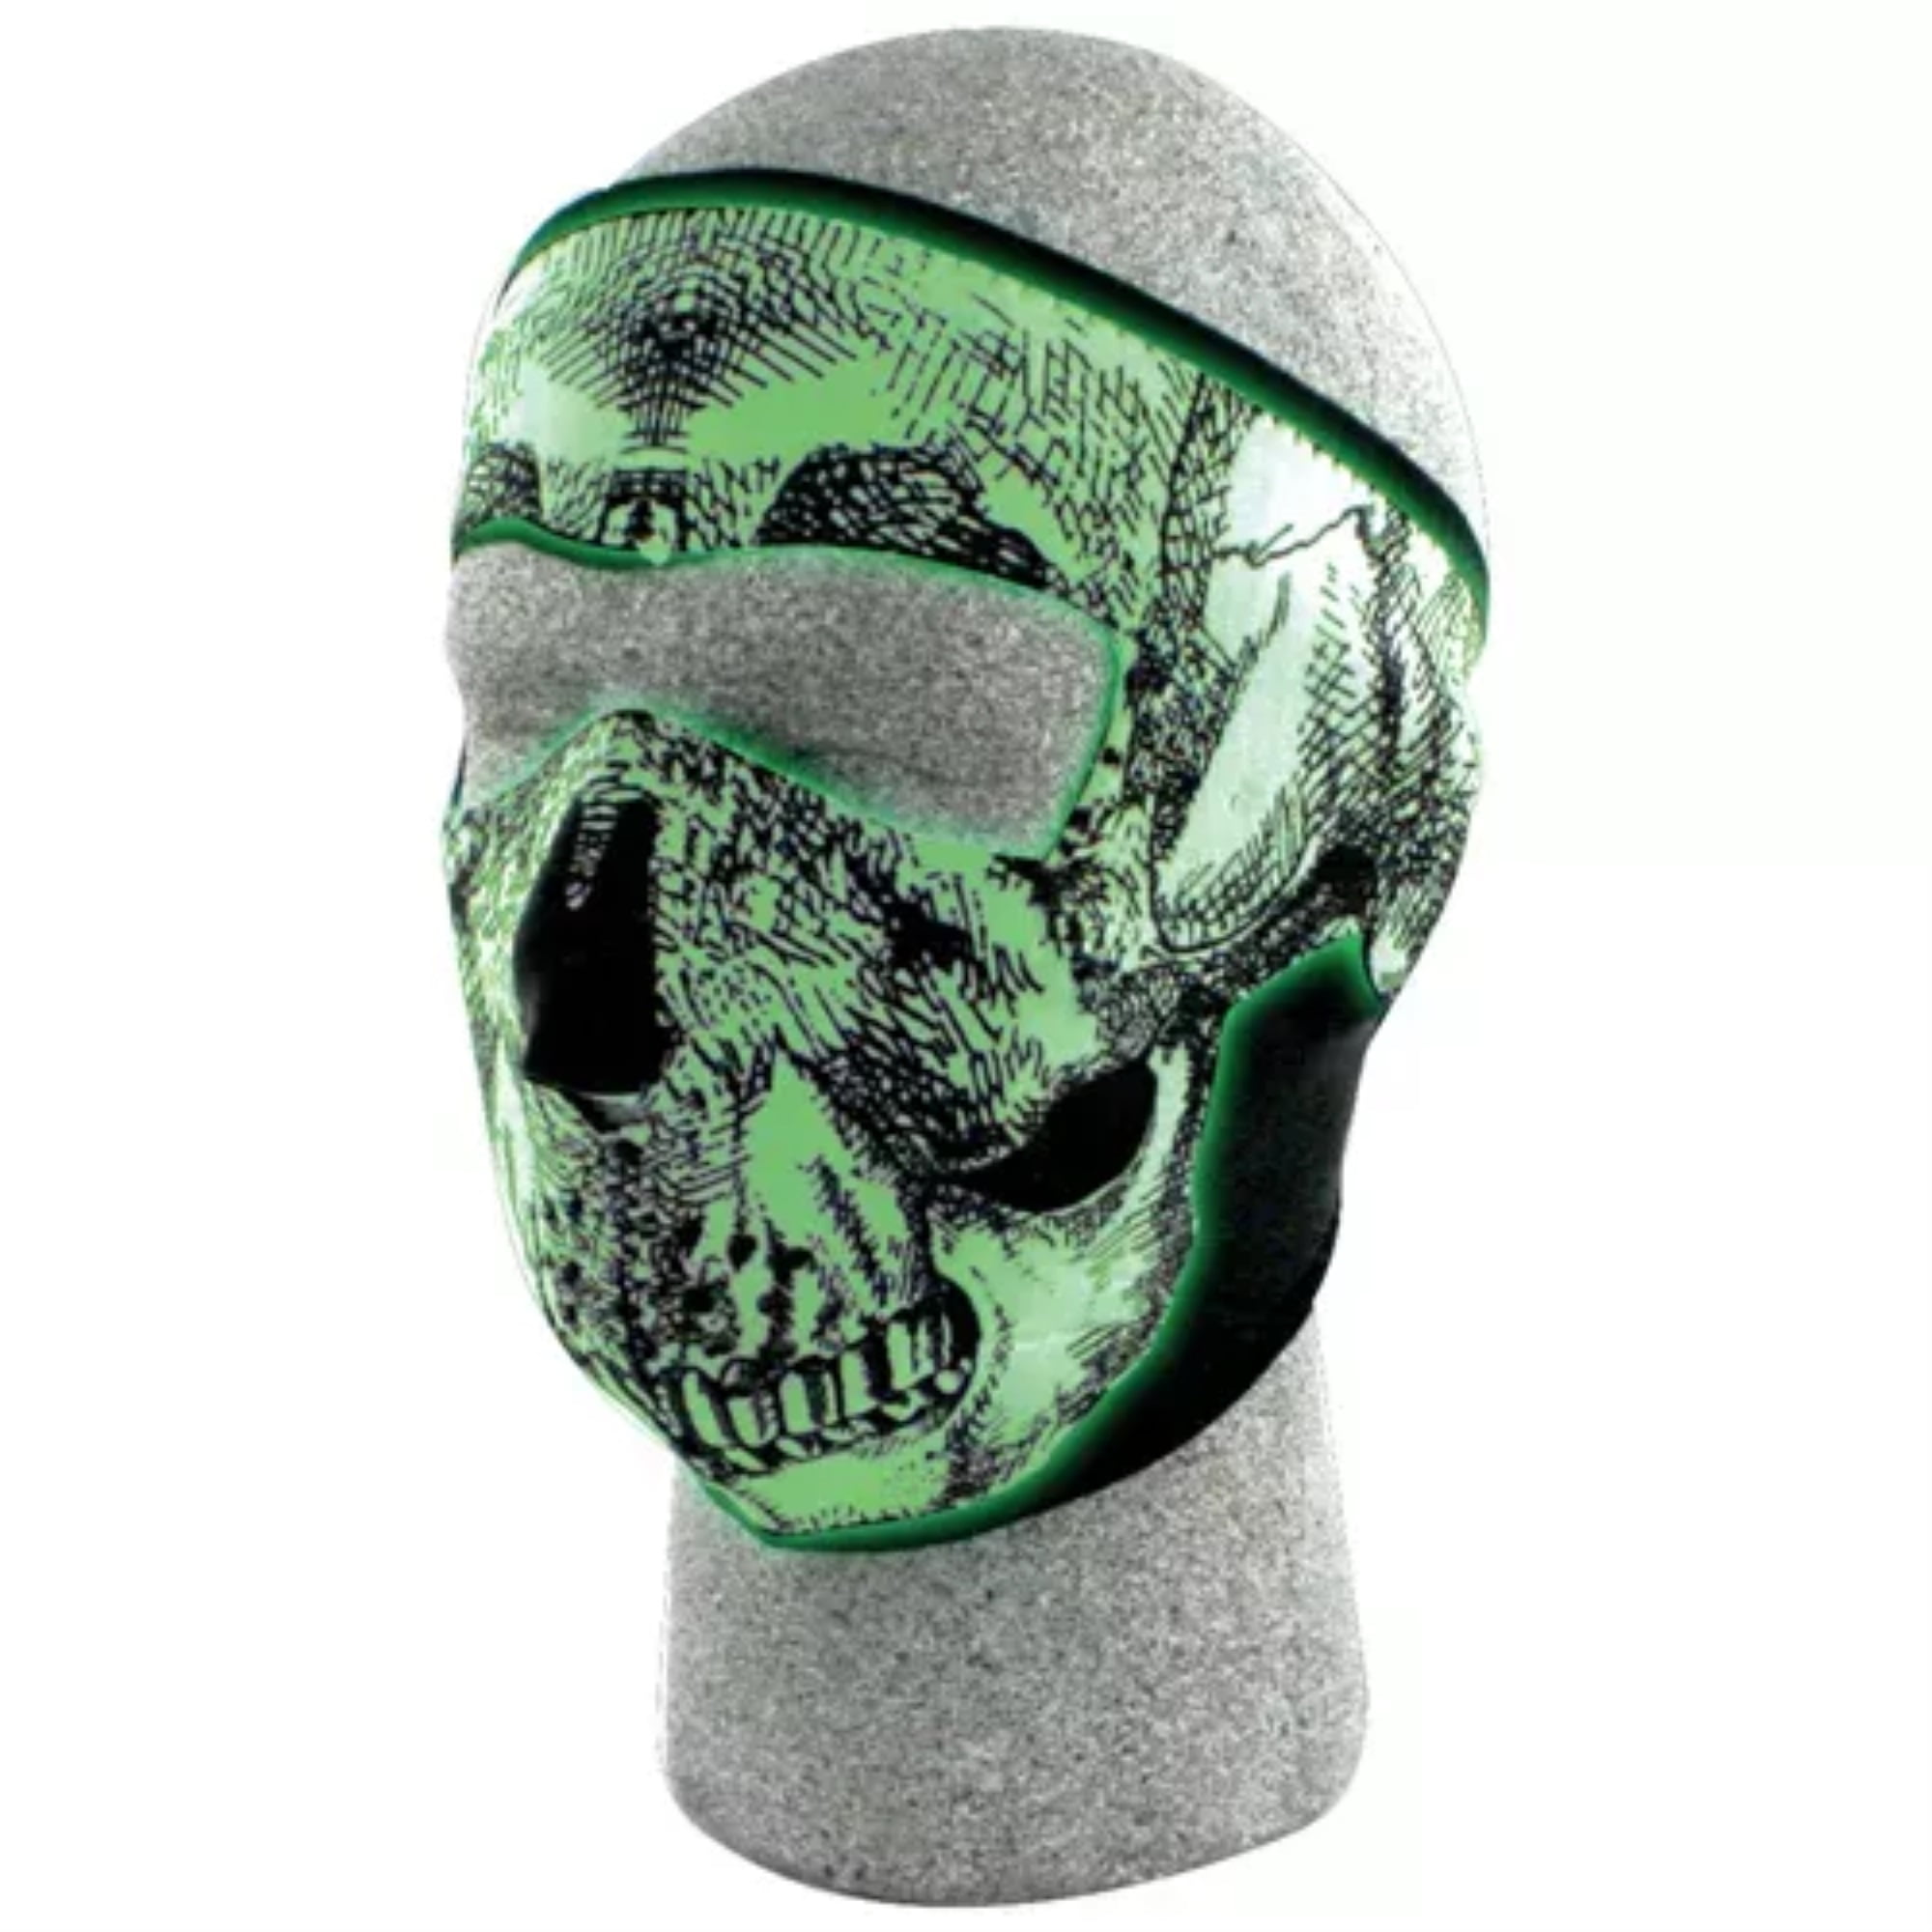 Pain Cyber Skull Neoprene Full Face Mask Biker ATV Ski Paintball Free Shipping 